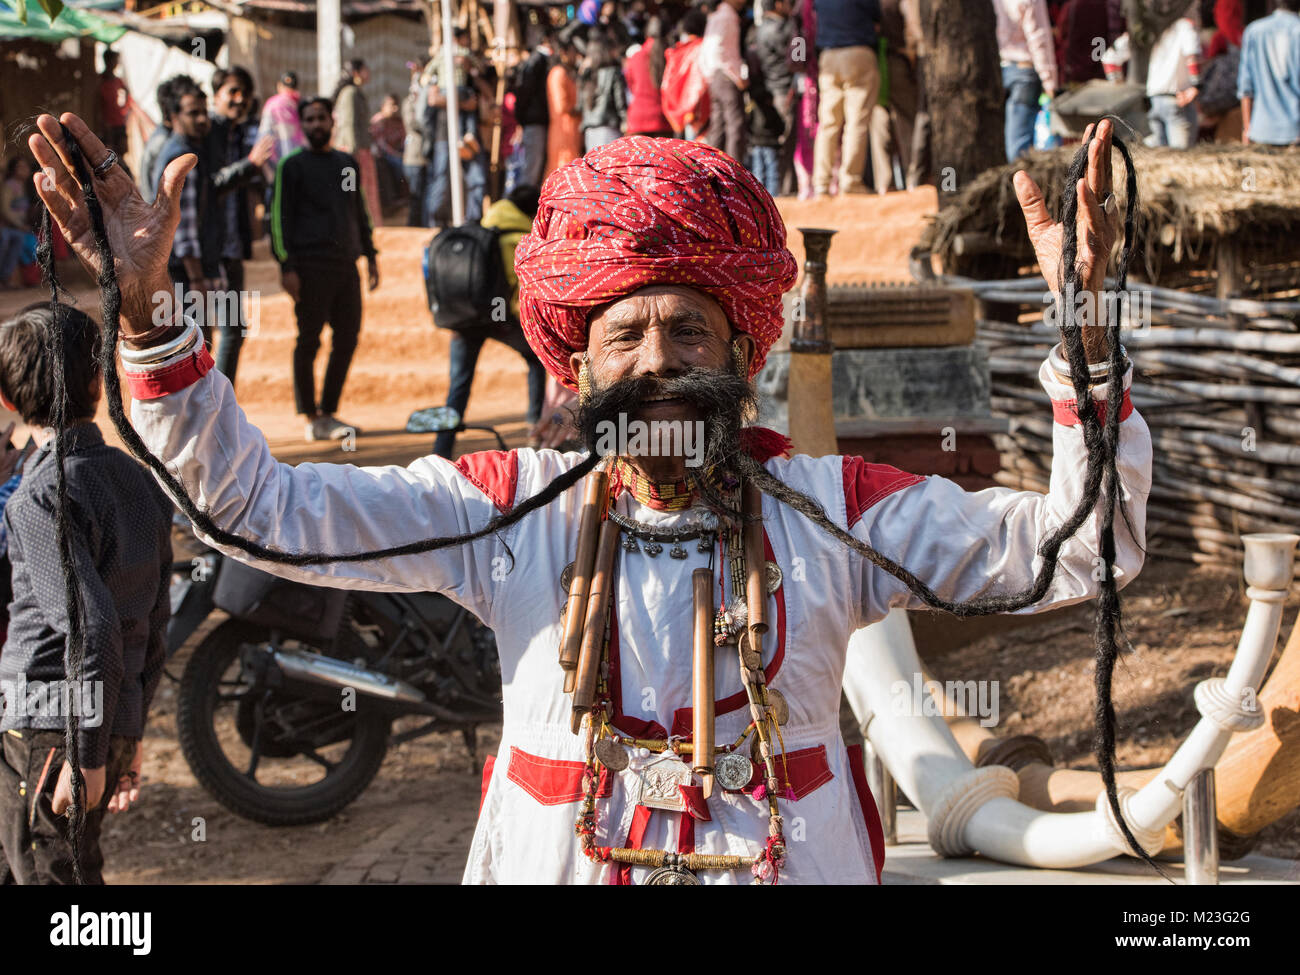 Mr. Mustache contestant, Desert Festival in Jaisalmer, Rajasthan, India Stock Photo